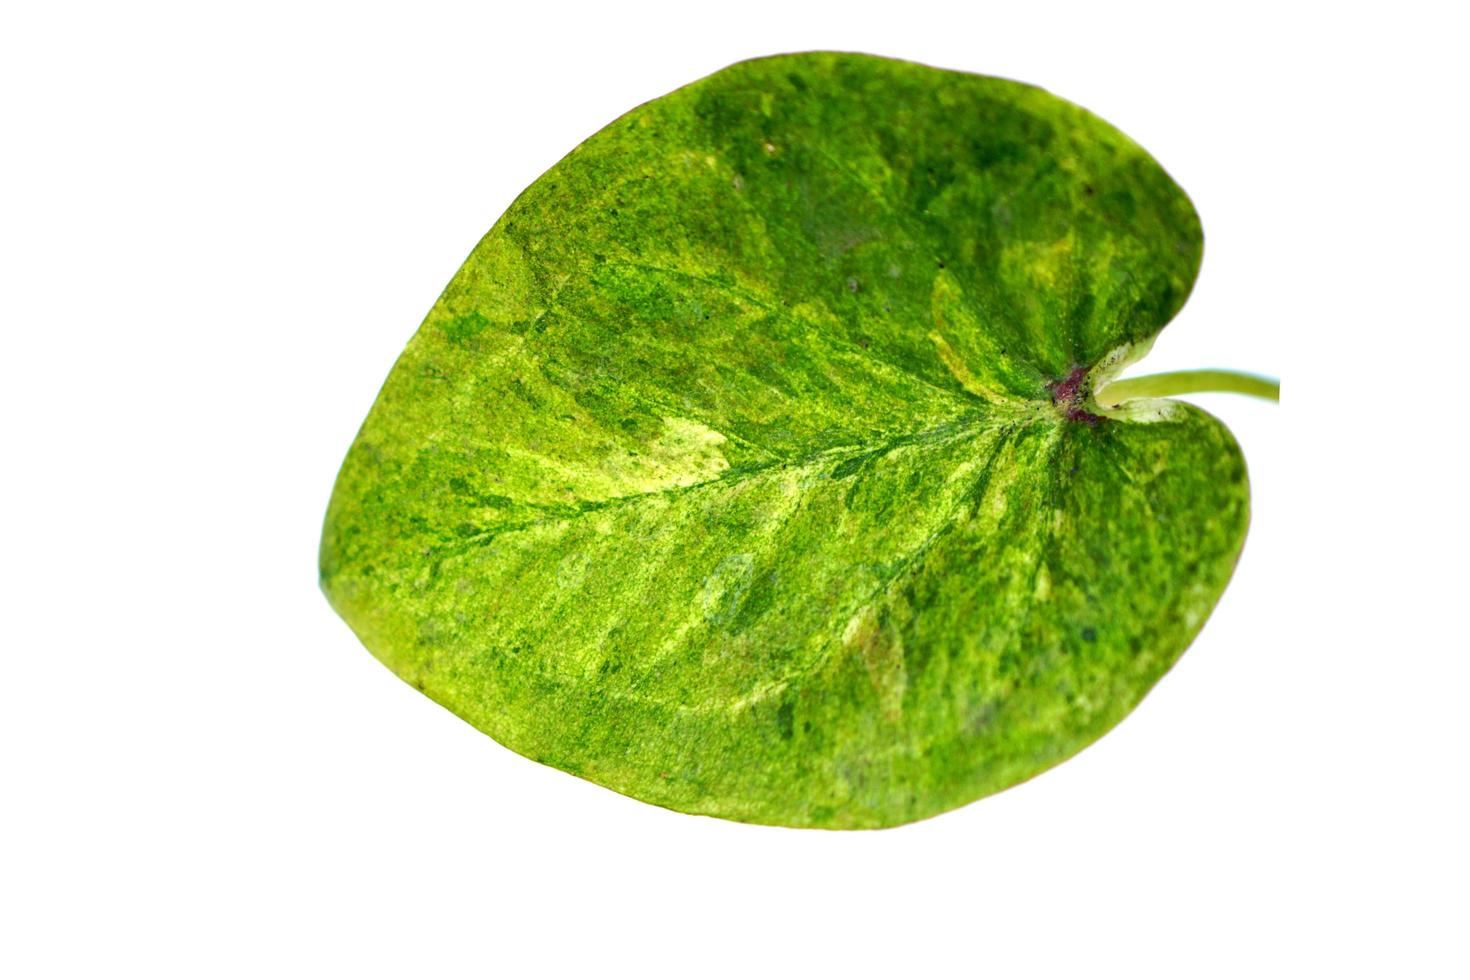 kaladium blad på en vit bakgrund foto